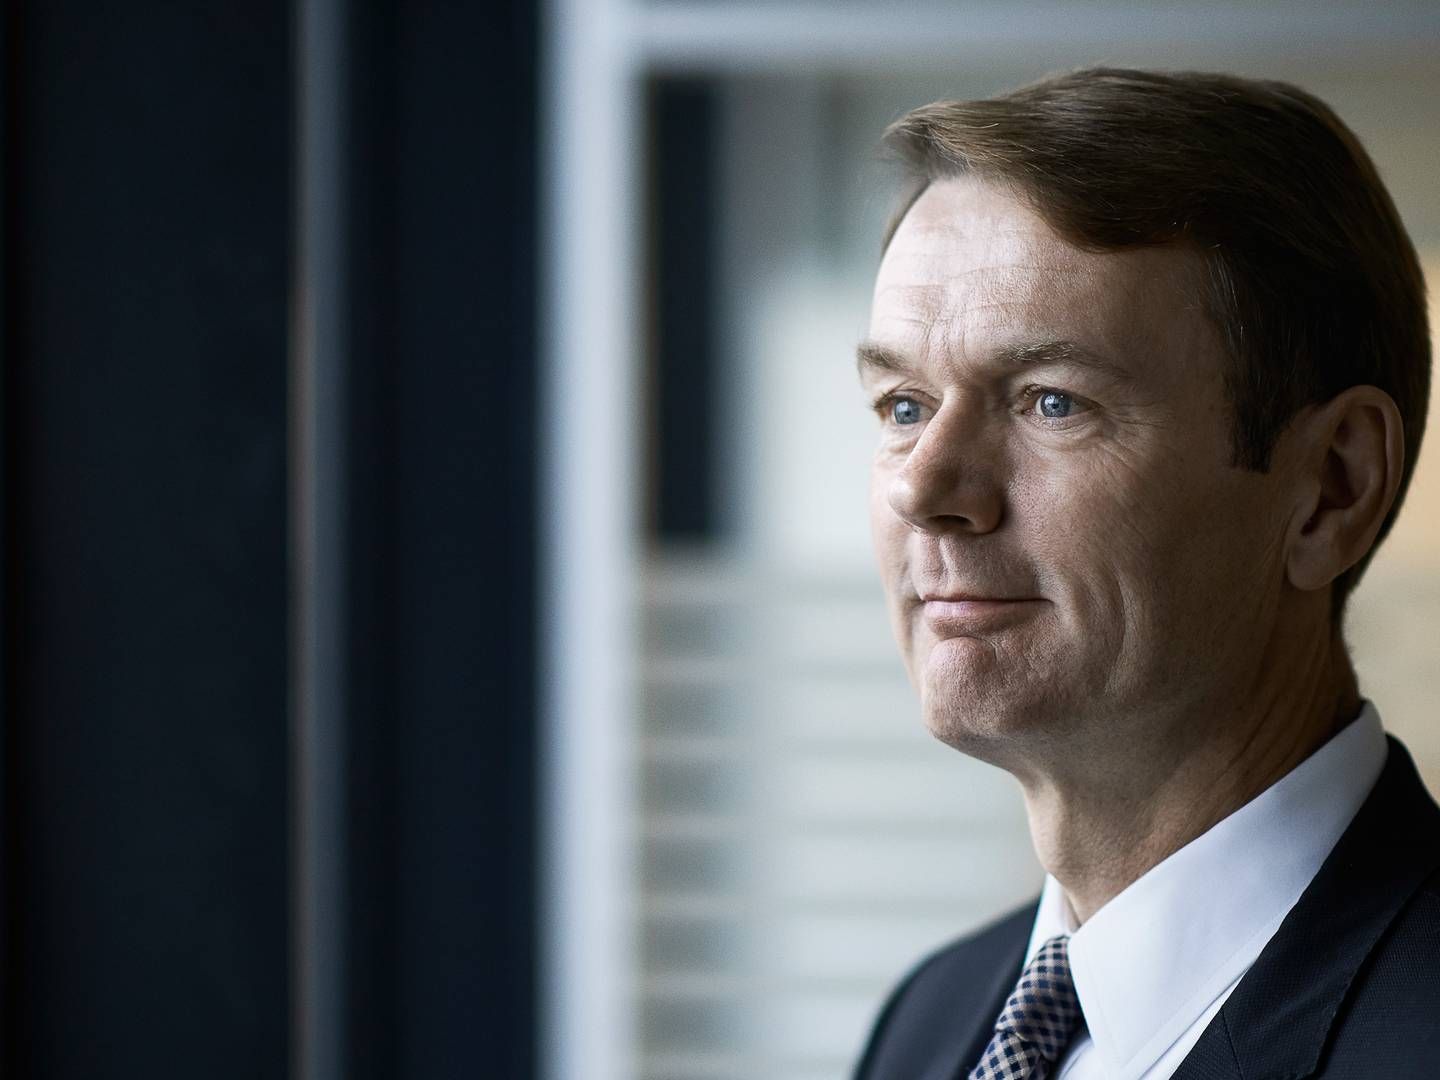 Lars Bo Bertram, adm. direktør for Baninvest. | Foto: PR/Bankinvest